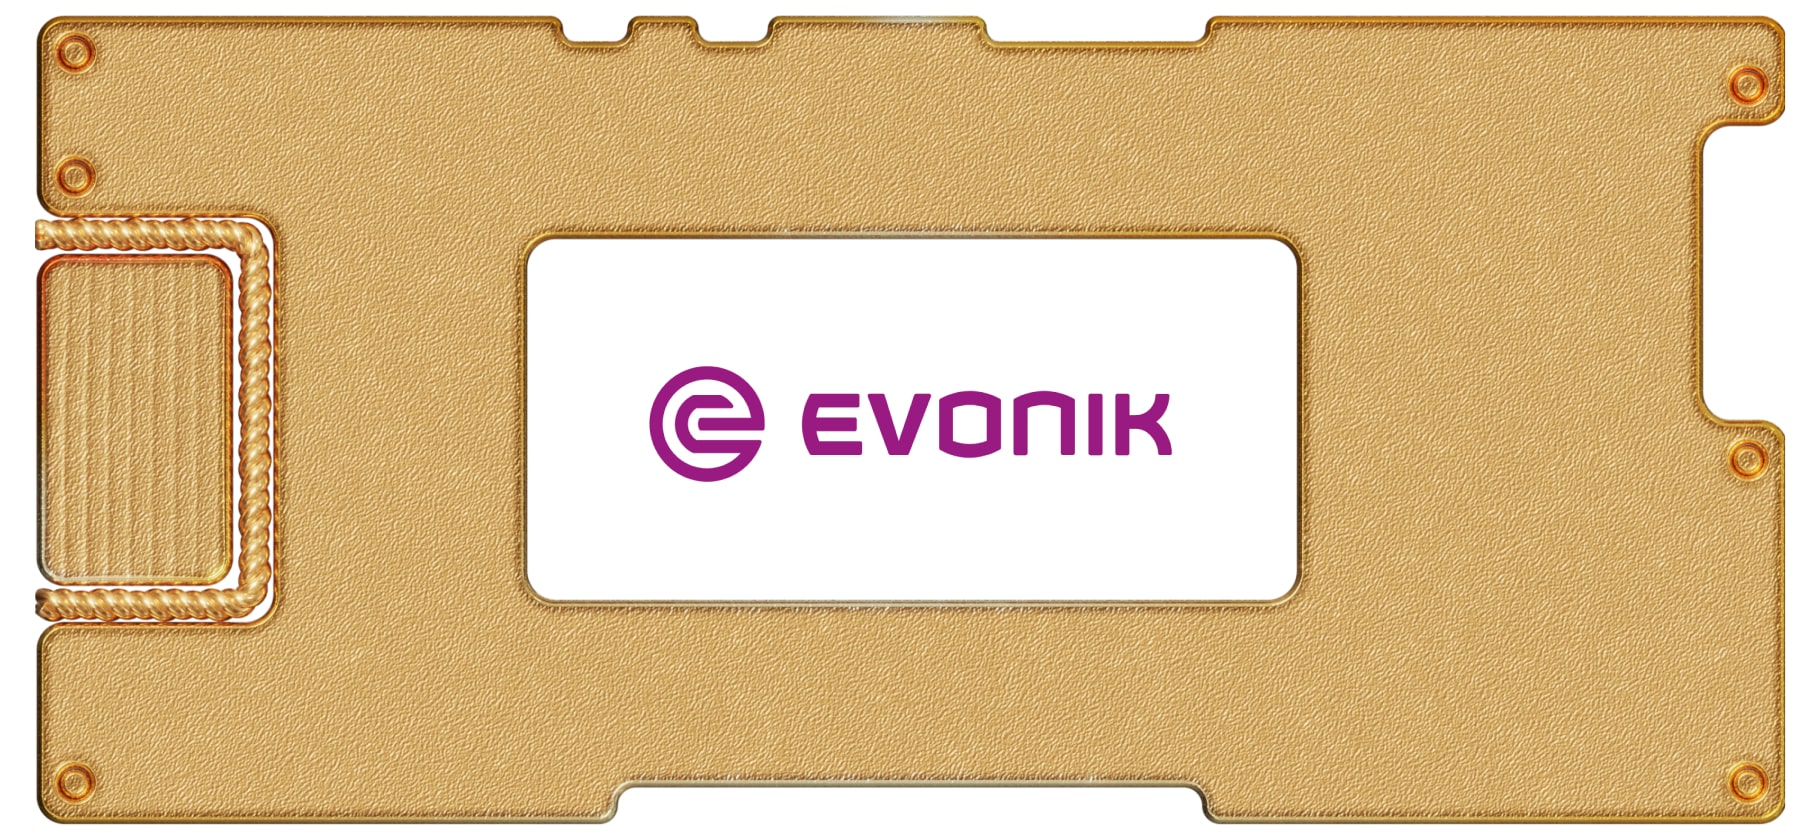 Инвестидея: Evonik, потому что немцы умеют и могут